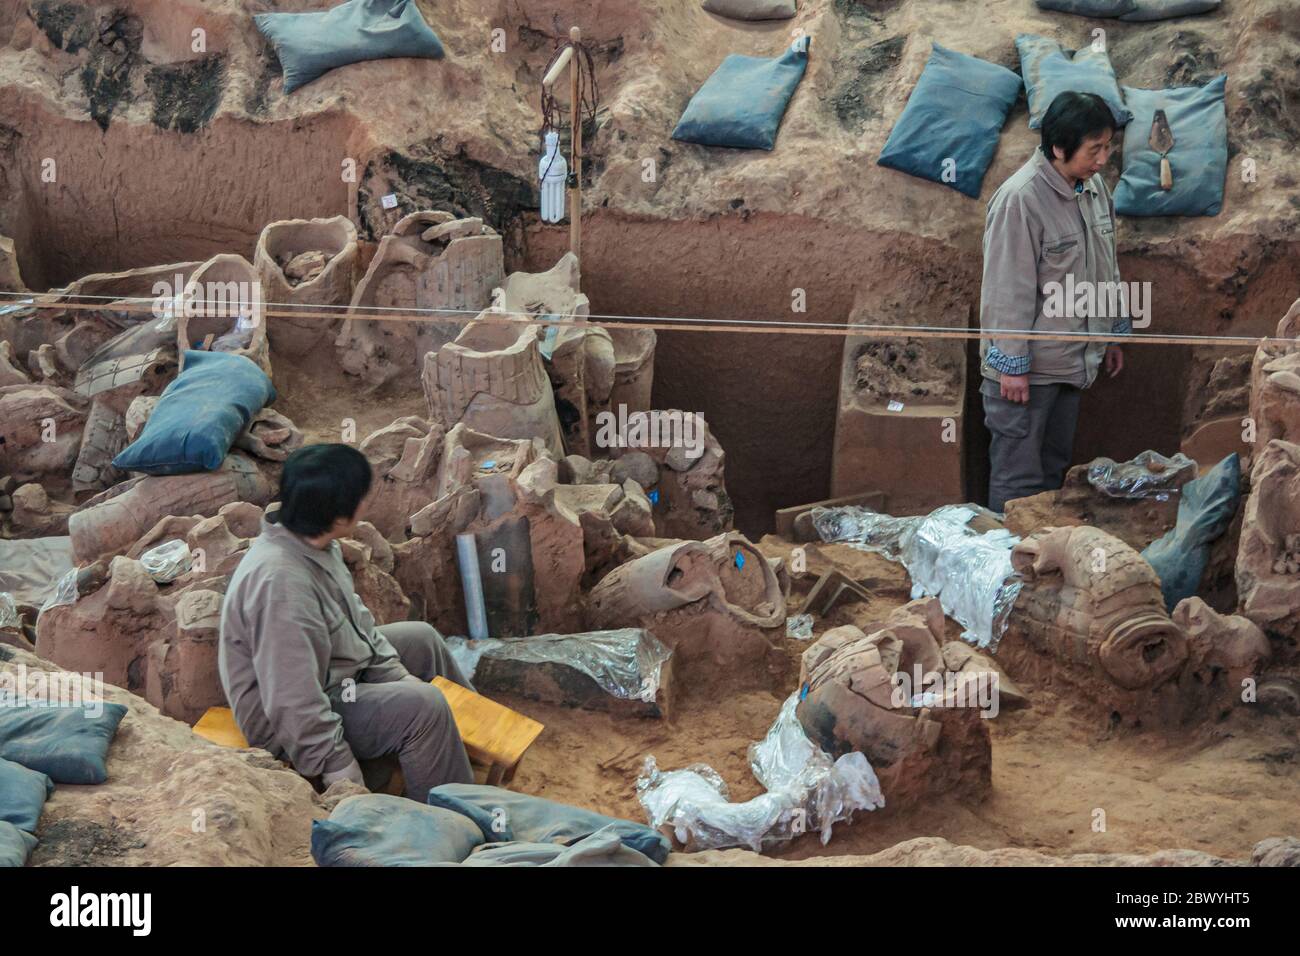 Xian, Cina - 1 maggio 2010: Museo e sala dell'Esercito di terracotta. 2 ricercatori che lavorano nella sporcizia, trovando nuove sculture, allo scavo. Foto Stock